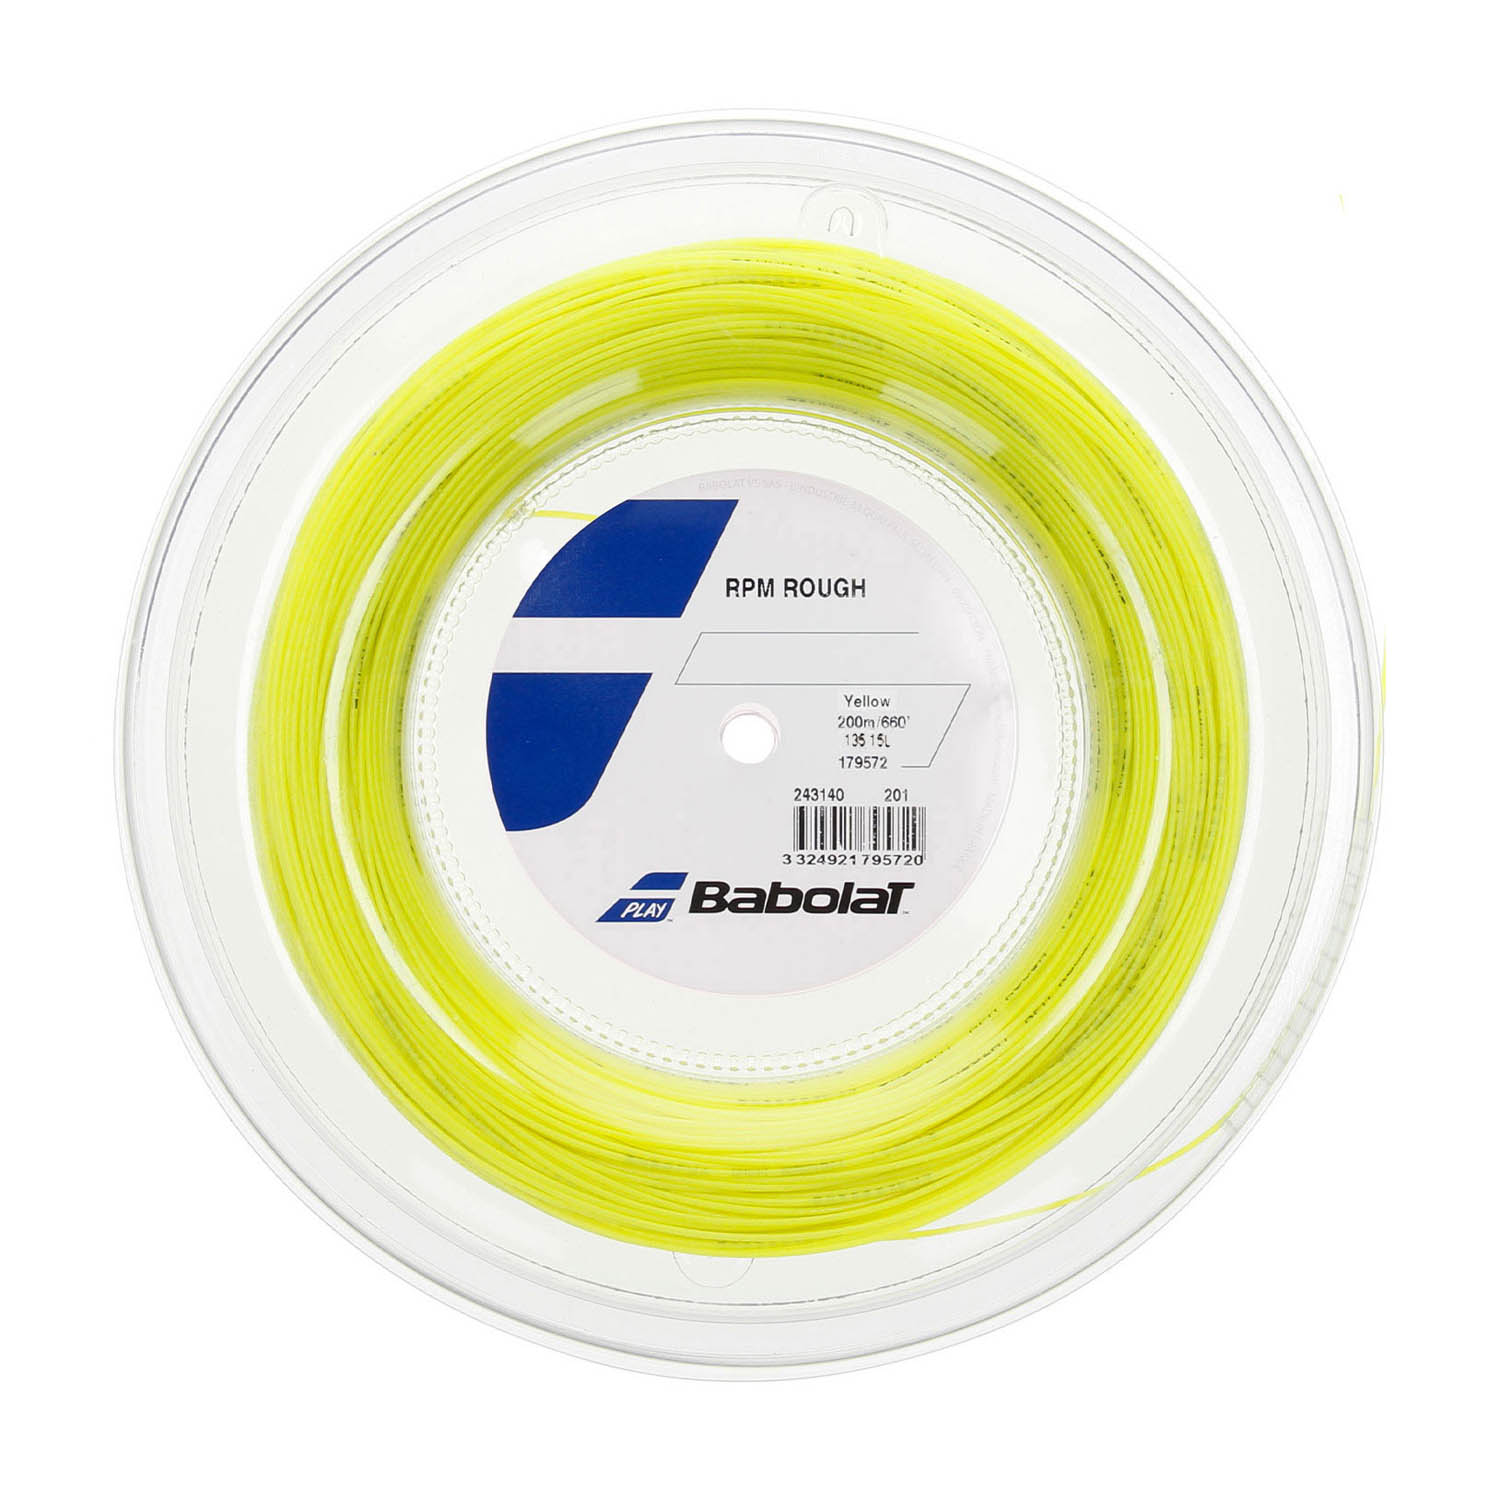 Babolat RPM Rough 1.35 Bobina 200 m - Yellow